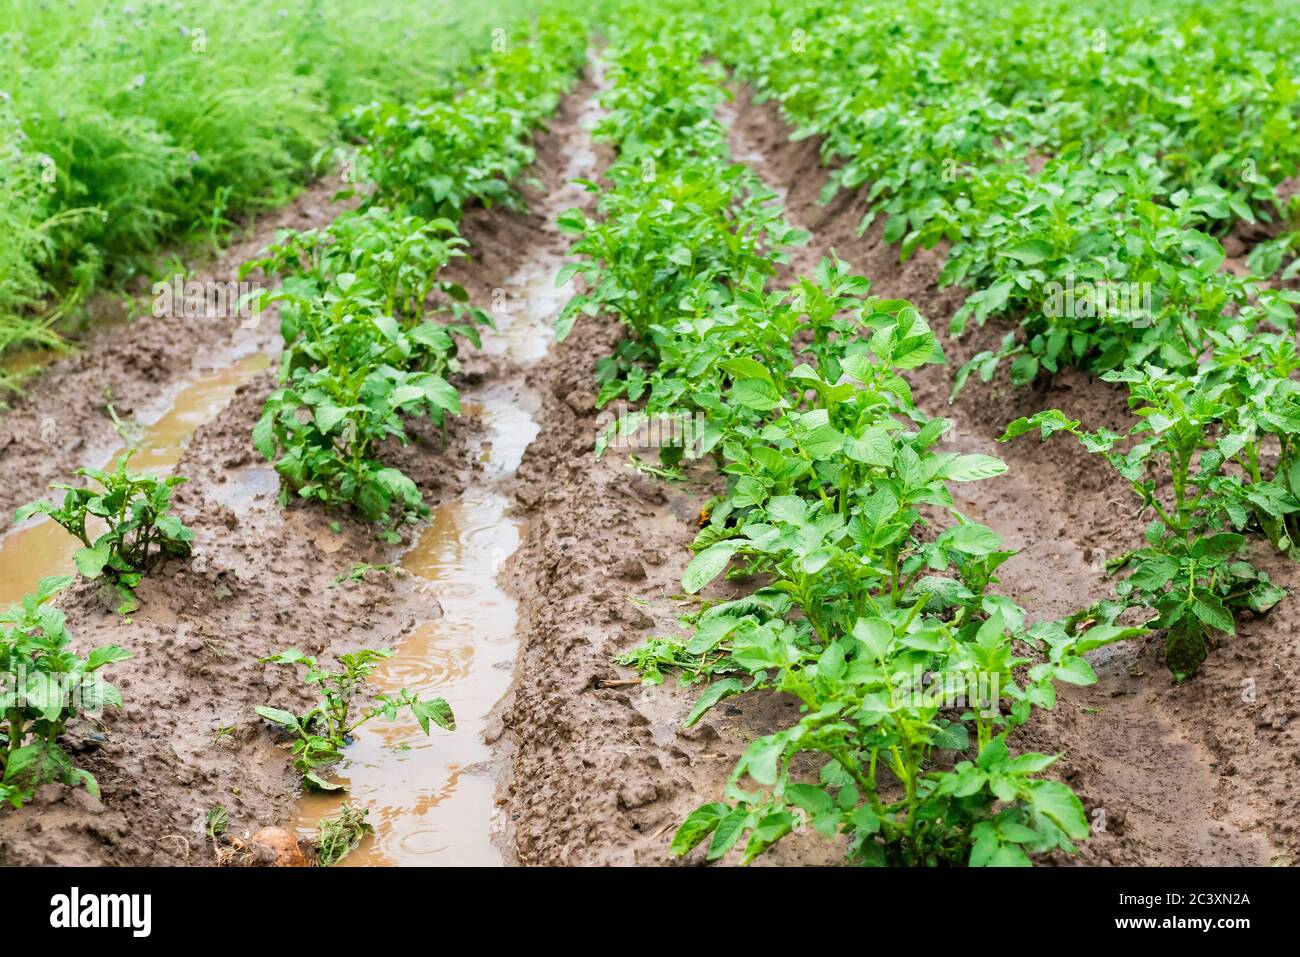 Patate in solchi con acqua dopo pioggia pesante. Disastro agricolo. Alluvione. Foto di alta qualità Foto Stock